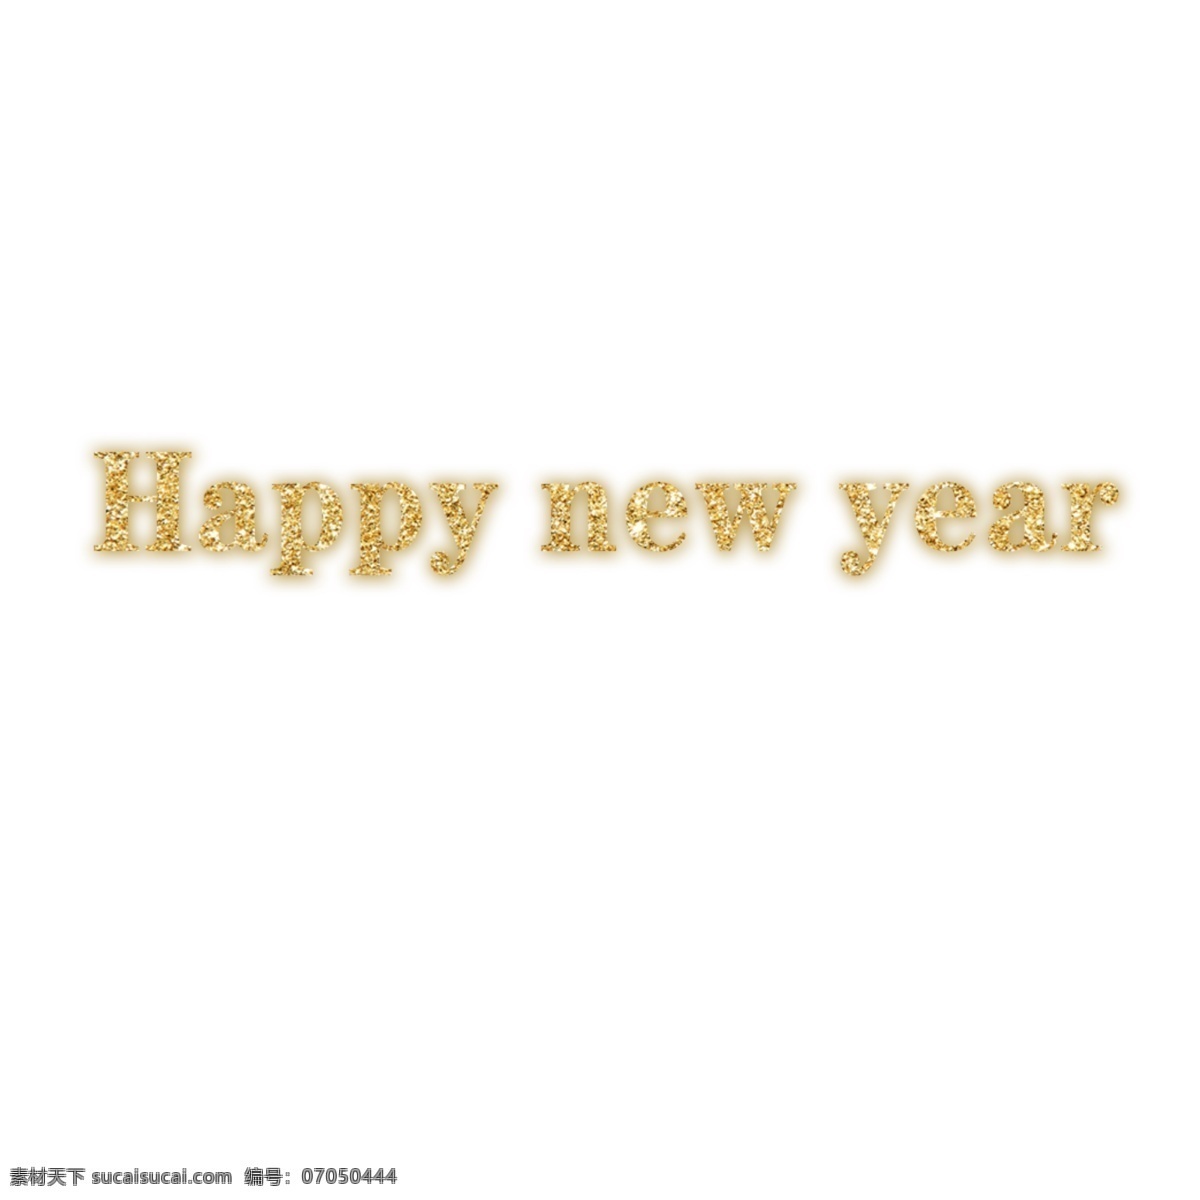 新年 快乐 良好 英语 字母 词 艺术 元素 新年快乐 英语字母 节日元素 png元素 透明的元素 元素设计 上杉达也